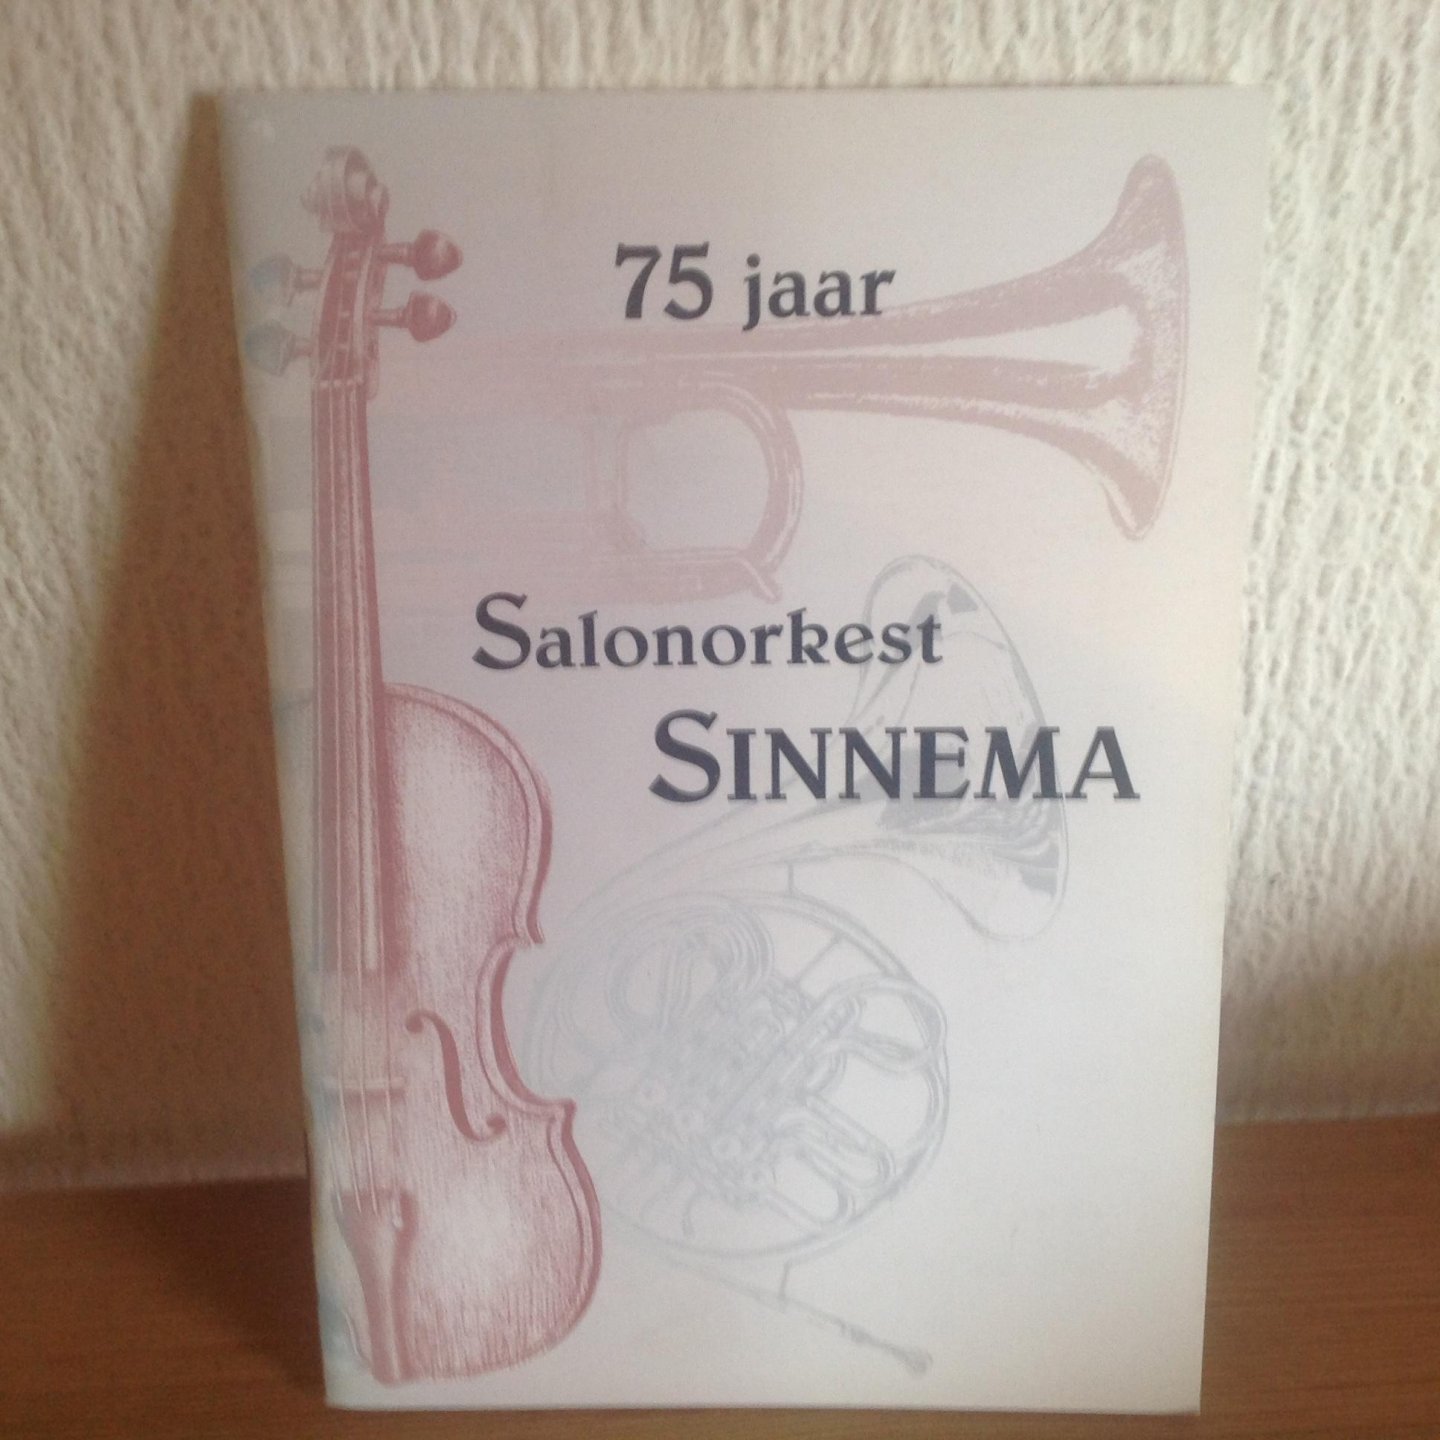  - 75 jaar Salonorkest Sinnema ,Leeuwarden